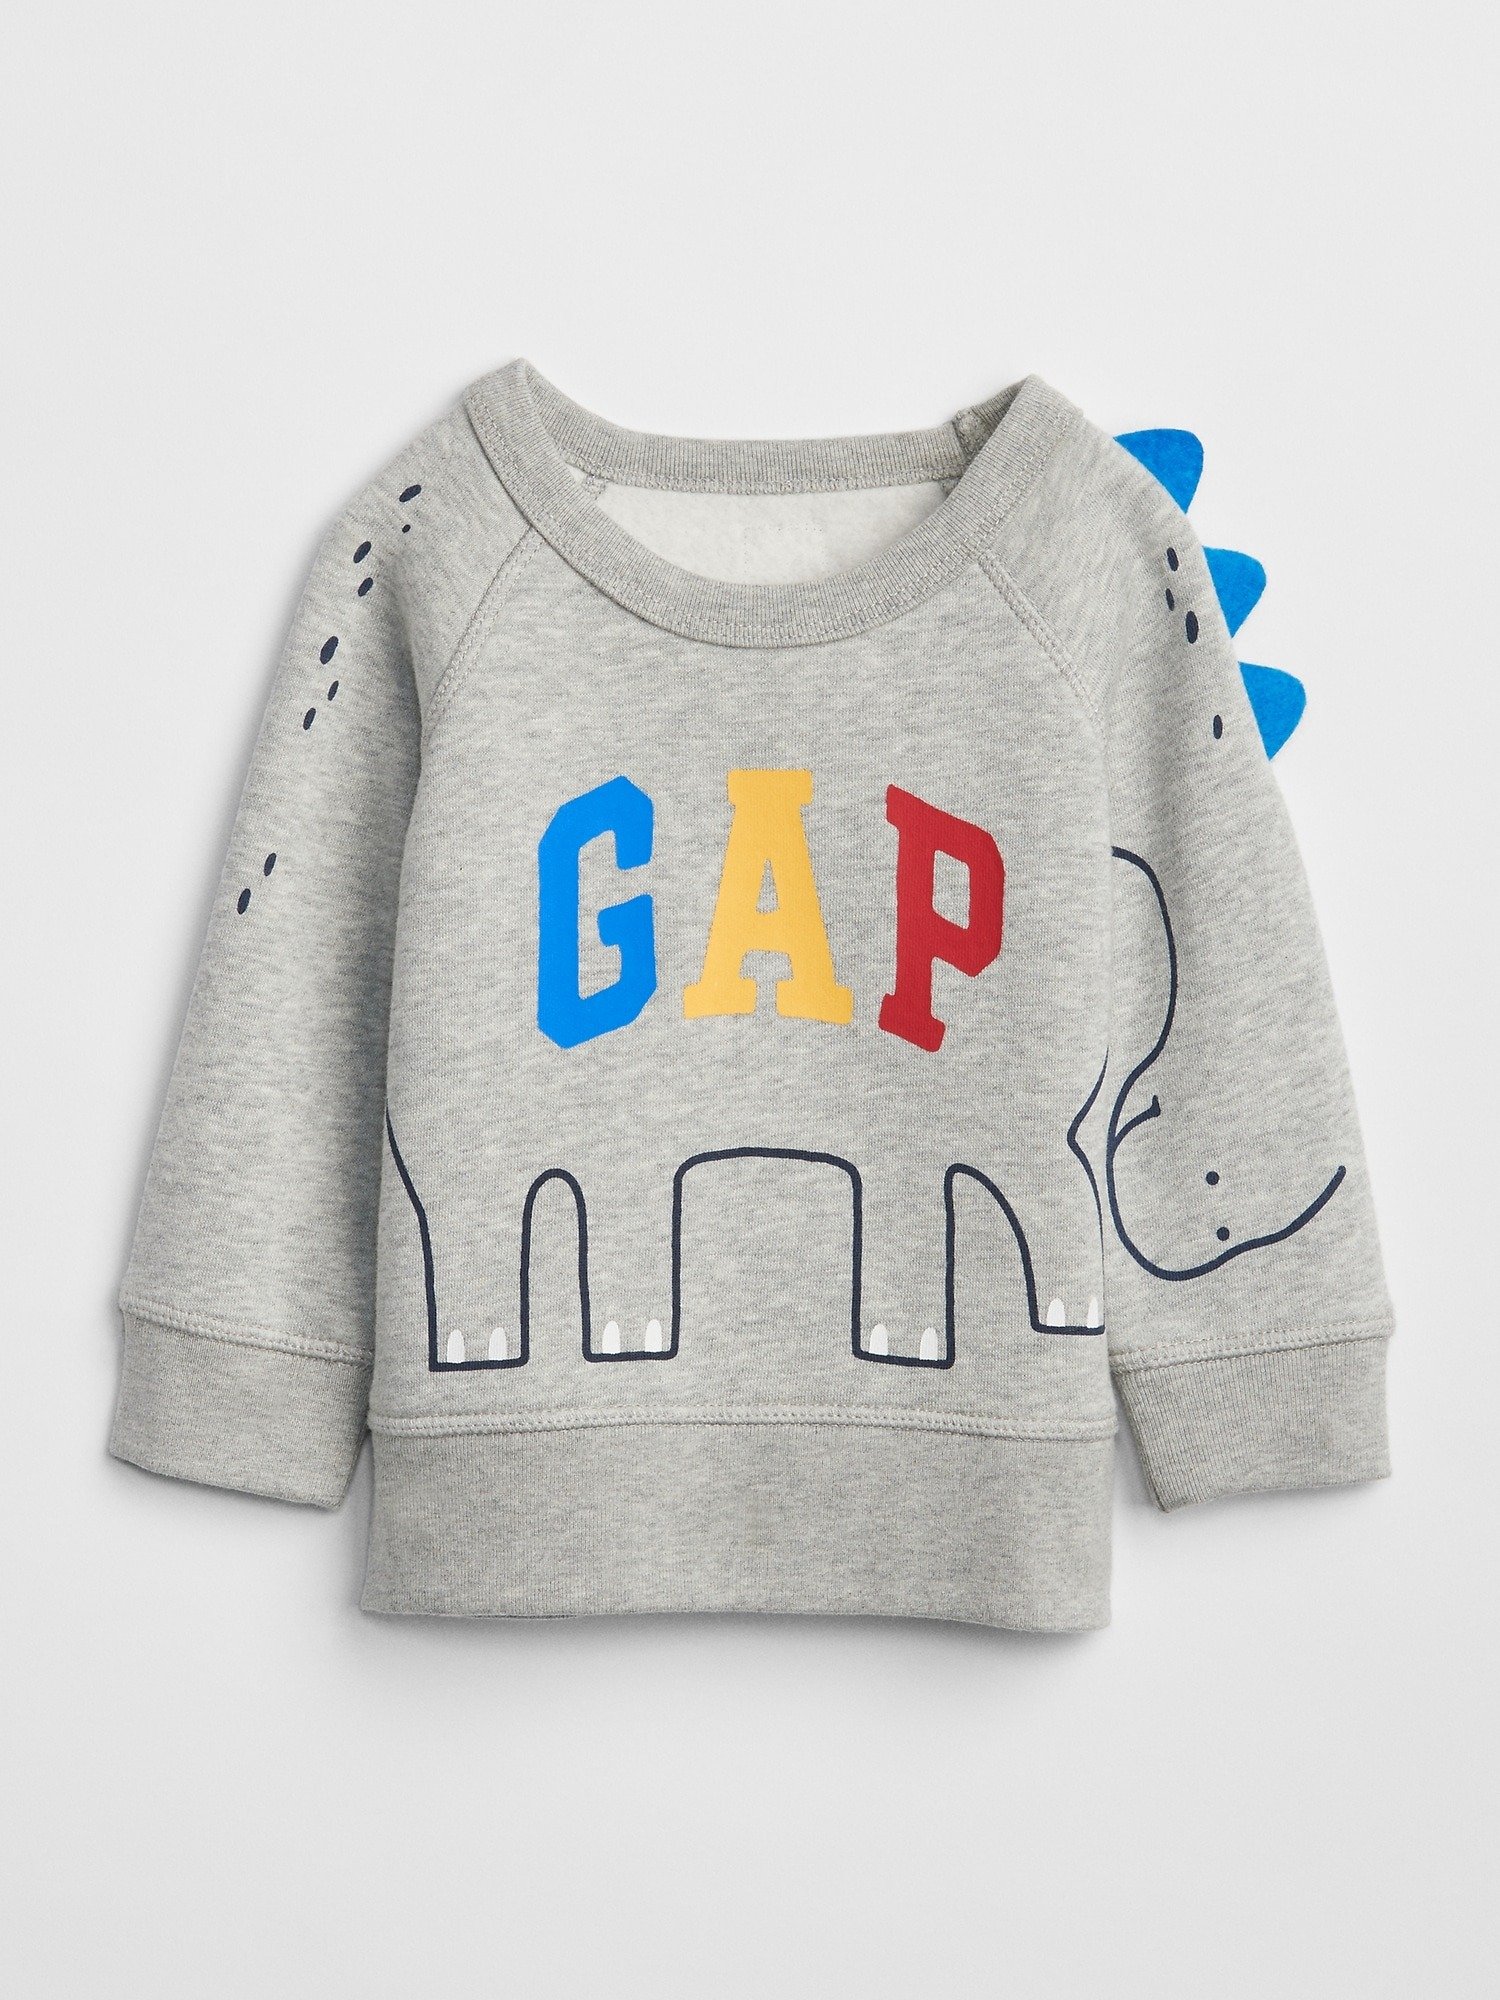 3D Gap Logo Baskılı Sweatshirt product image